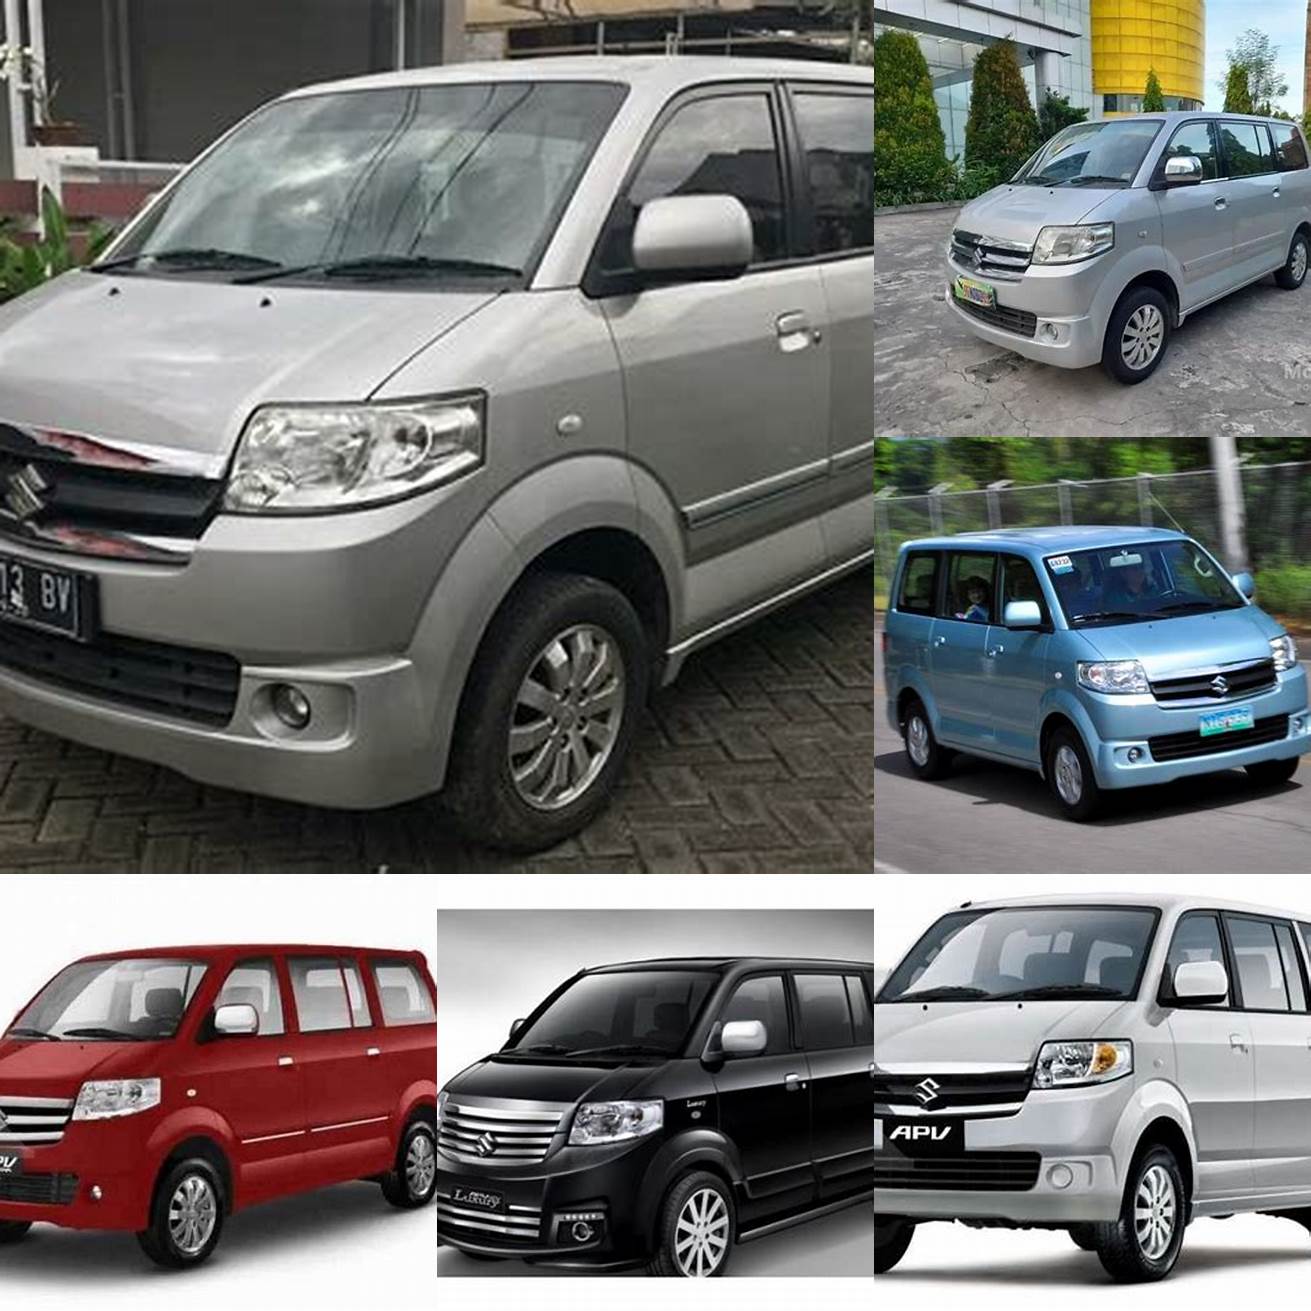 Harga mobil APV bekas tahun 2013 berkisar antara 80 - 130 juta rupiah